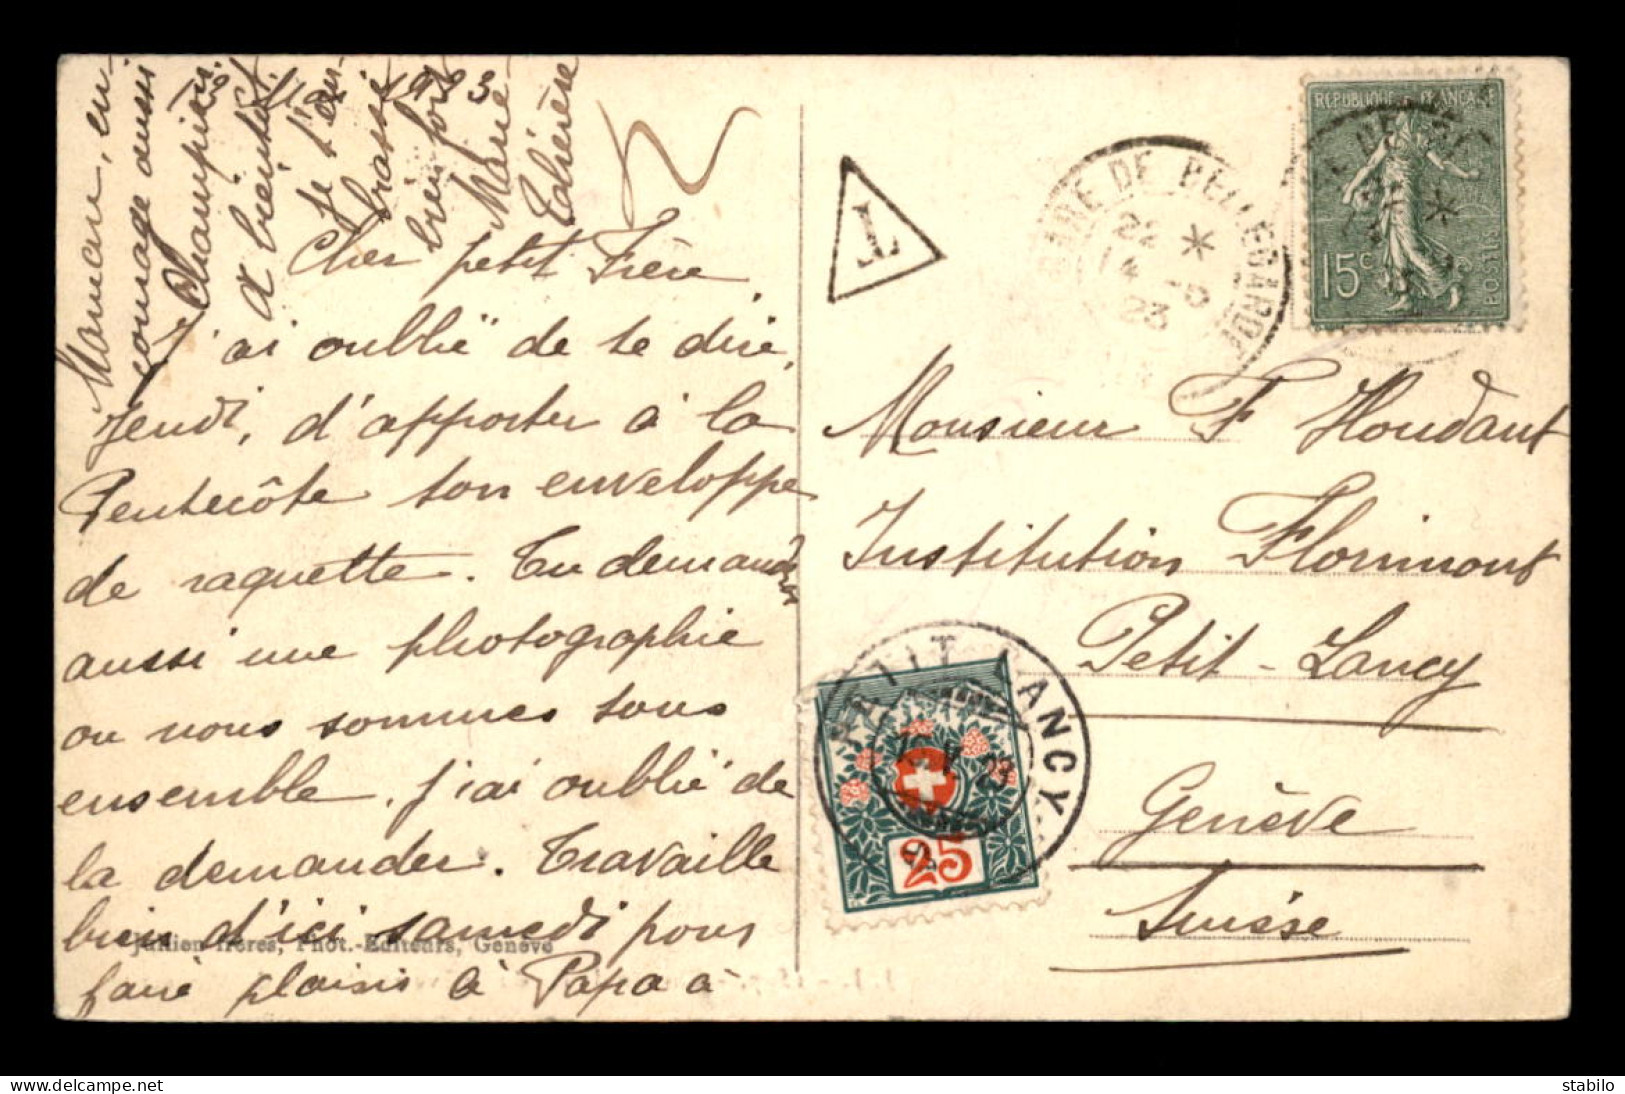 CARTE DU CHEMIN DE FER DU SALEVE (FRANCE) TAXEE AVEC 1 TIMBRE A 25 CENTIMES - CACHET DE PETIT LANCY DU 15.05.1923 - Postage Due